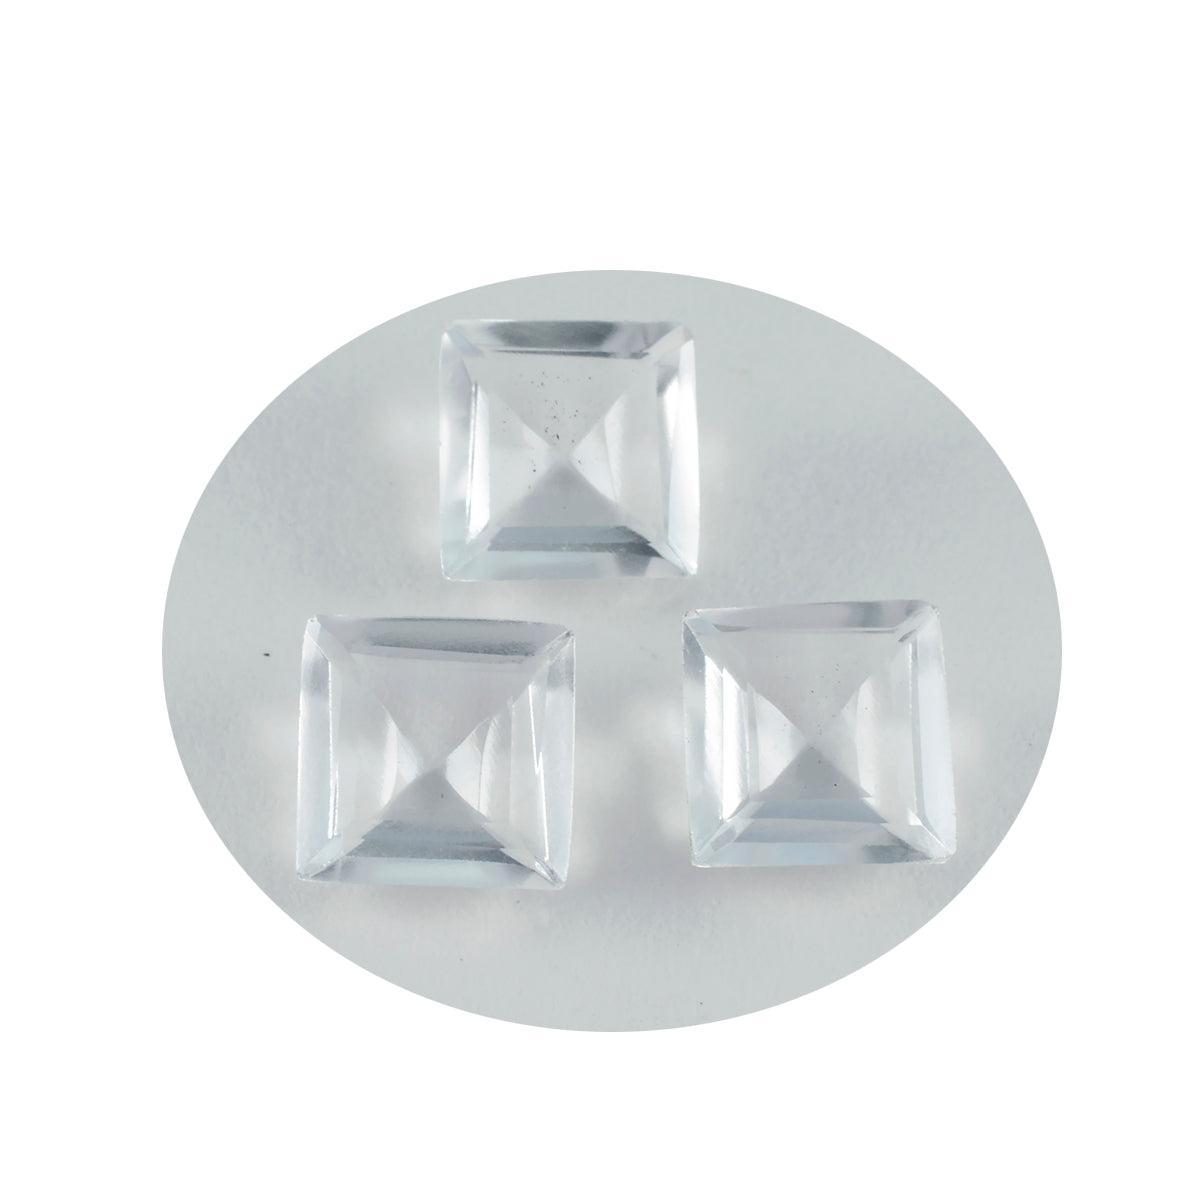 Riyogems 1PC wit kristalkwarts gefacetteerd 14x14 mm vierkante vorm geweldige kwaliteit losse steen